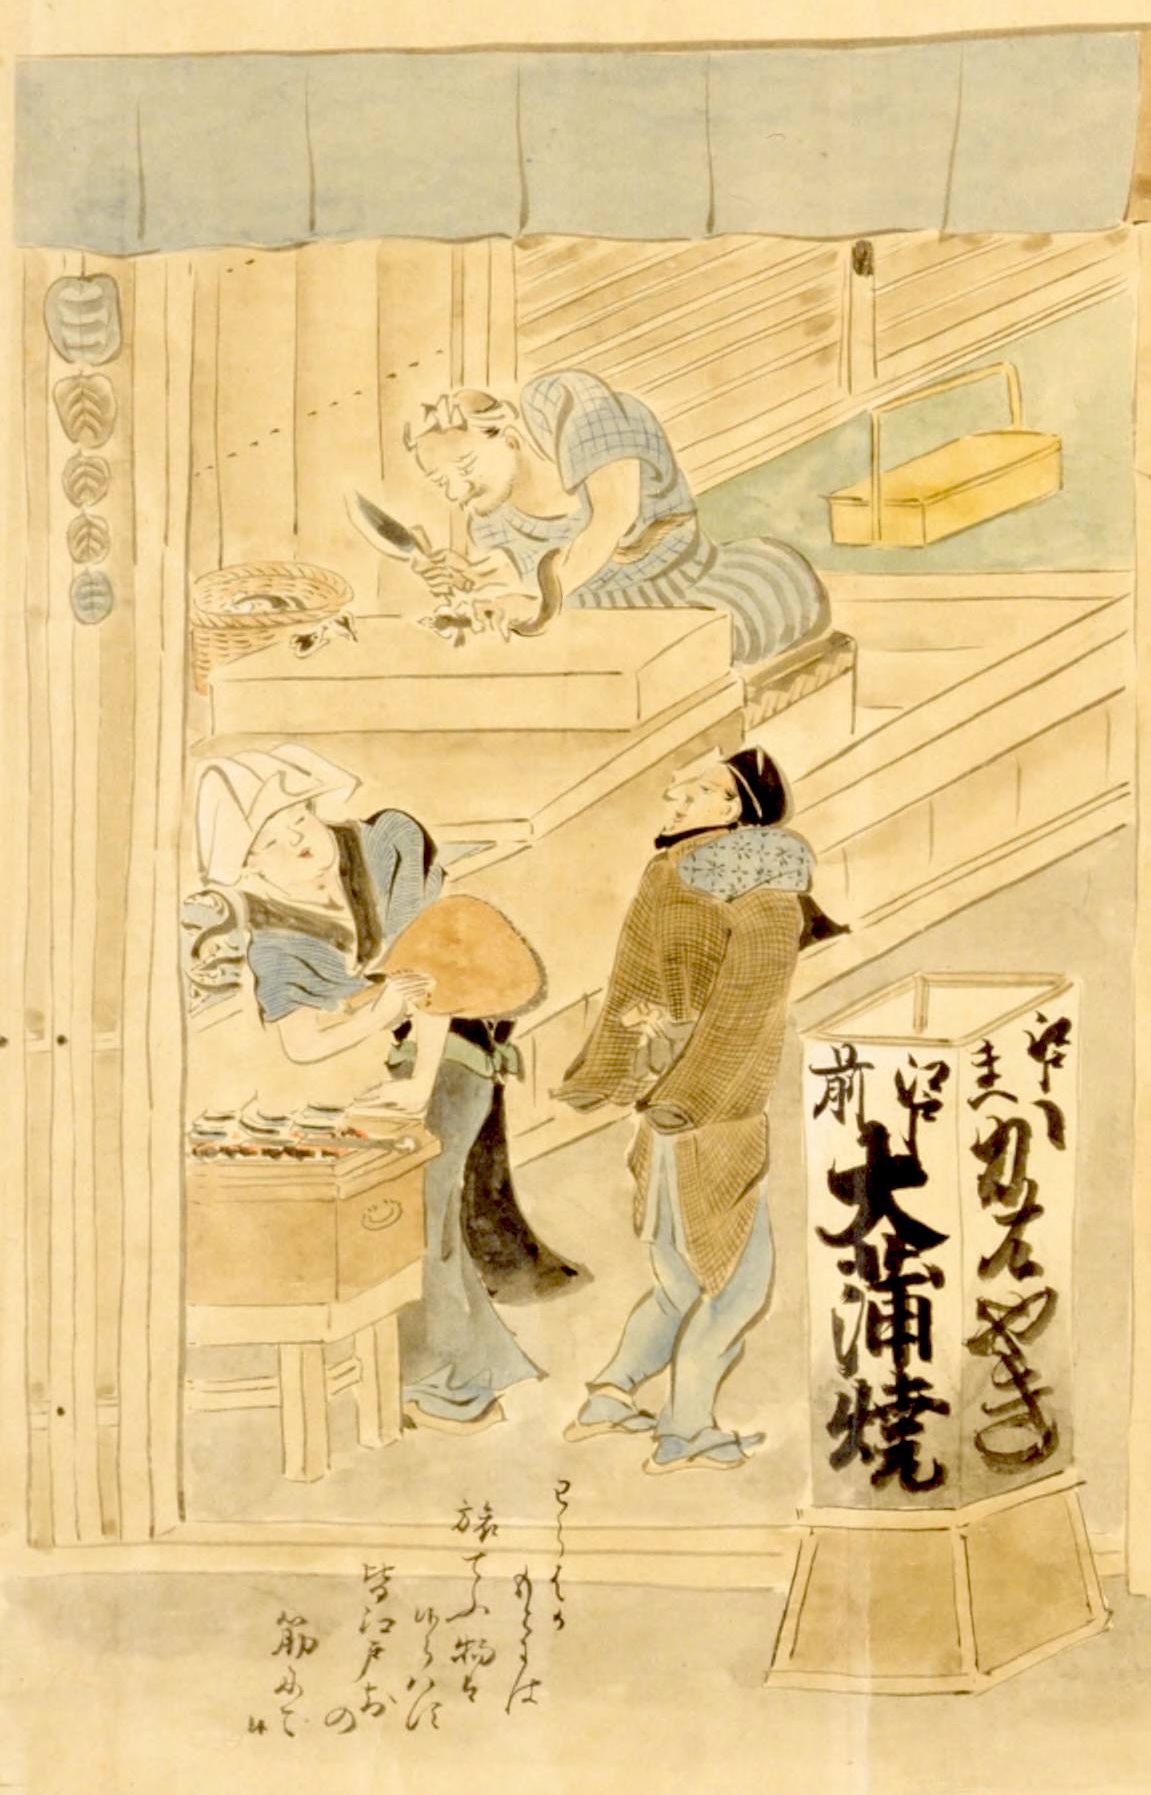 L'anguille locale Edo-mae rencontrait un grand succès. Extrait de l’ouvrage « Inventaire illustré et commenté des artisans » (Shokunin-zukushi ekotoba). Photo avec l'aimable autorisation de la Bibliothèque nationale de la Diète.